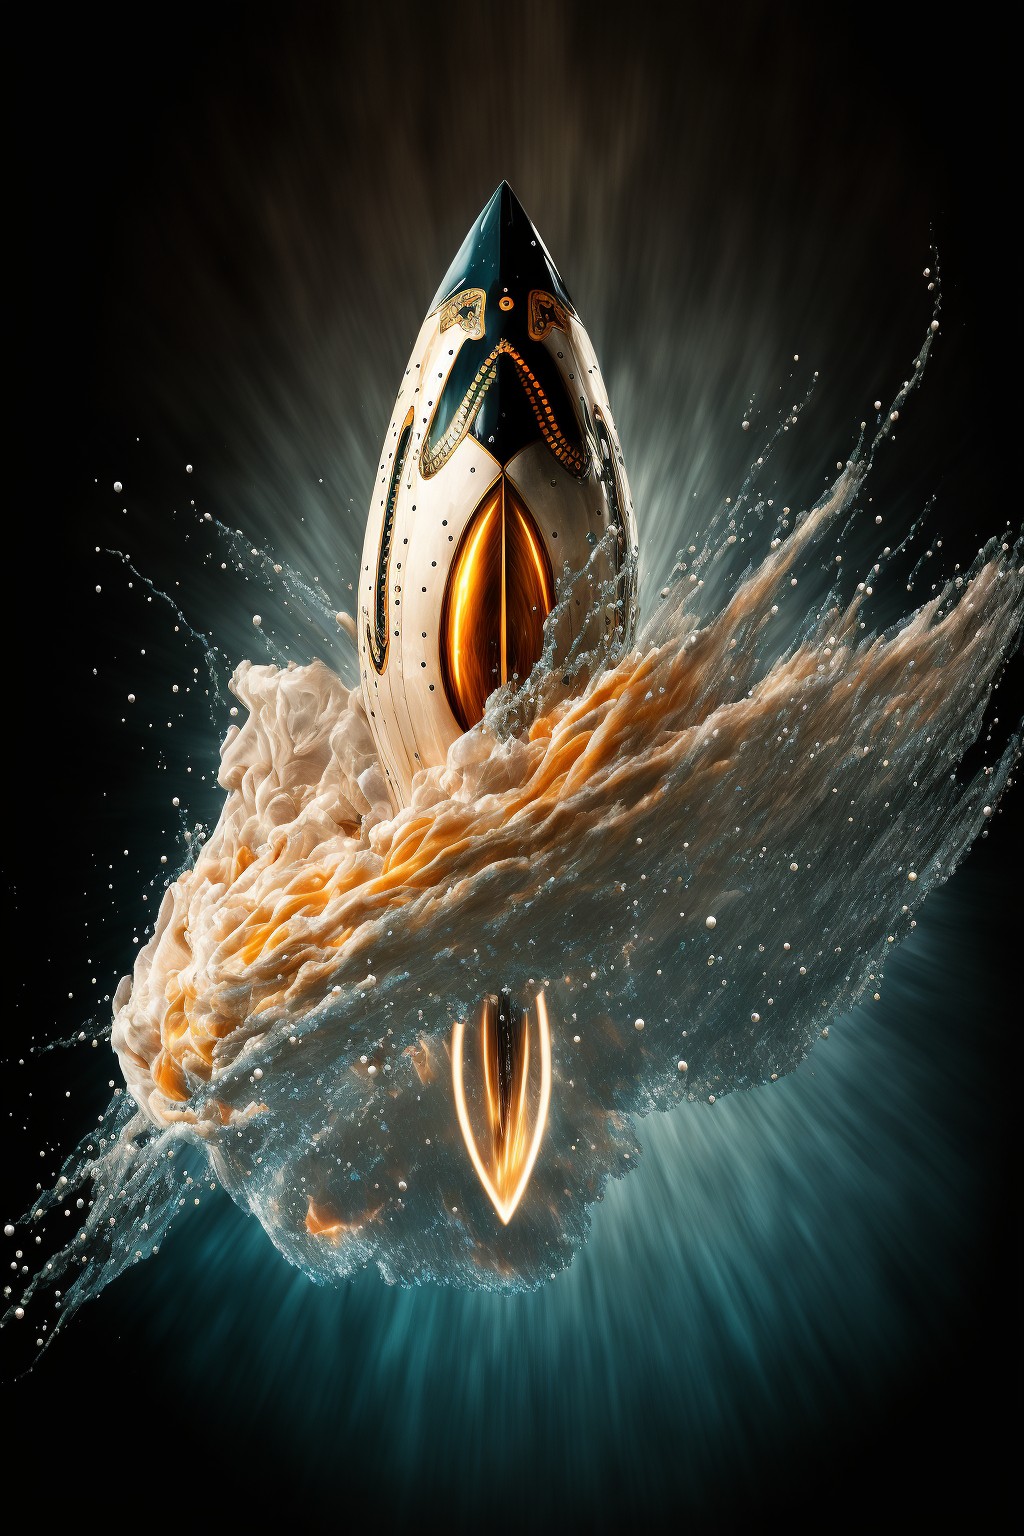 水滴形状的火箭科幻作品